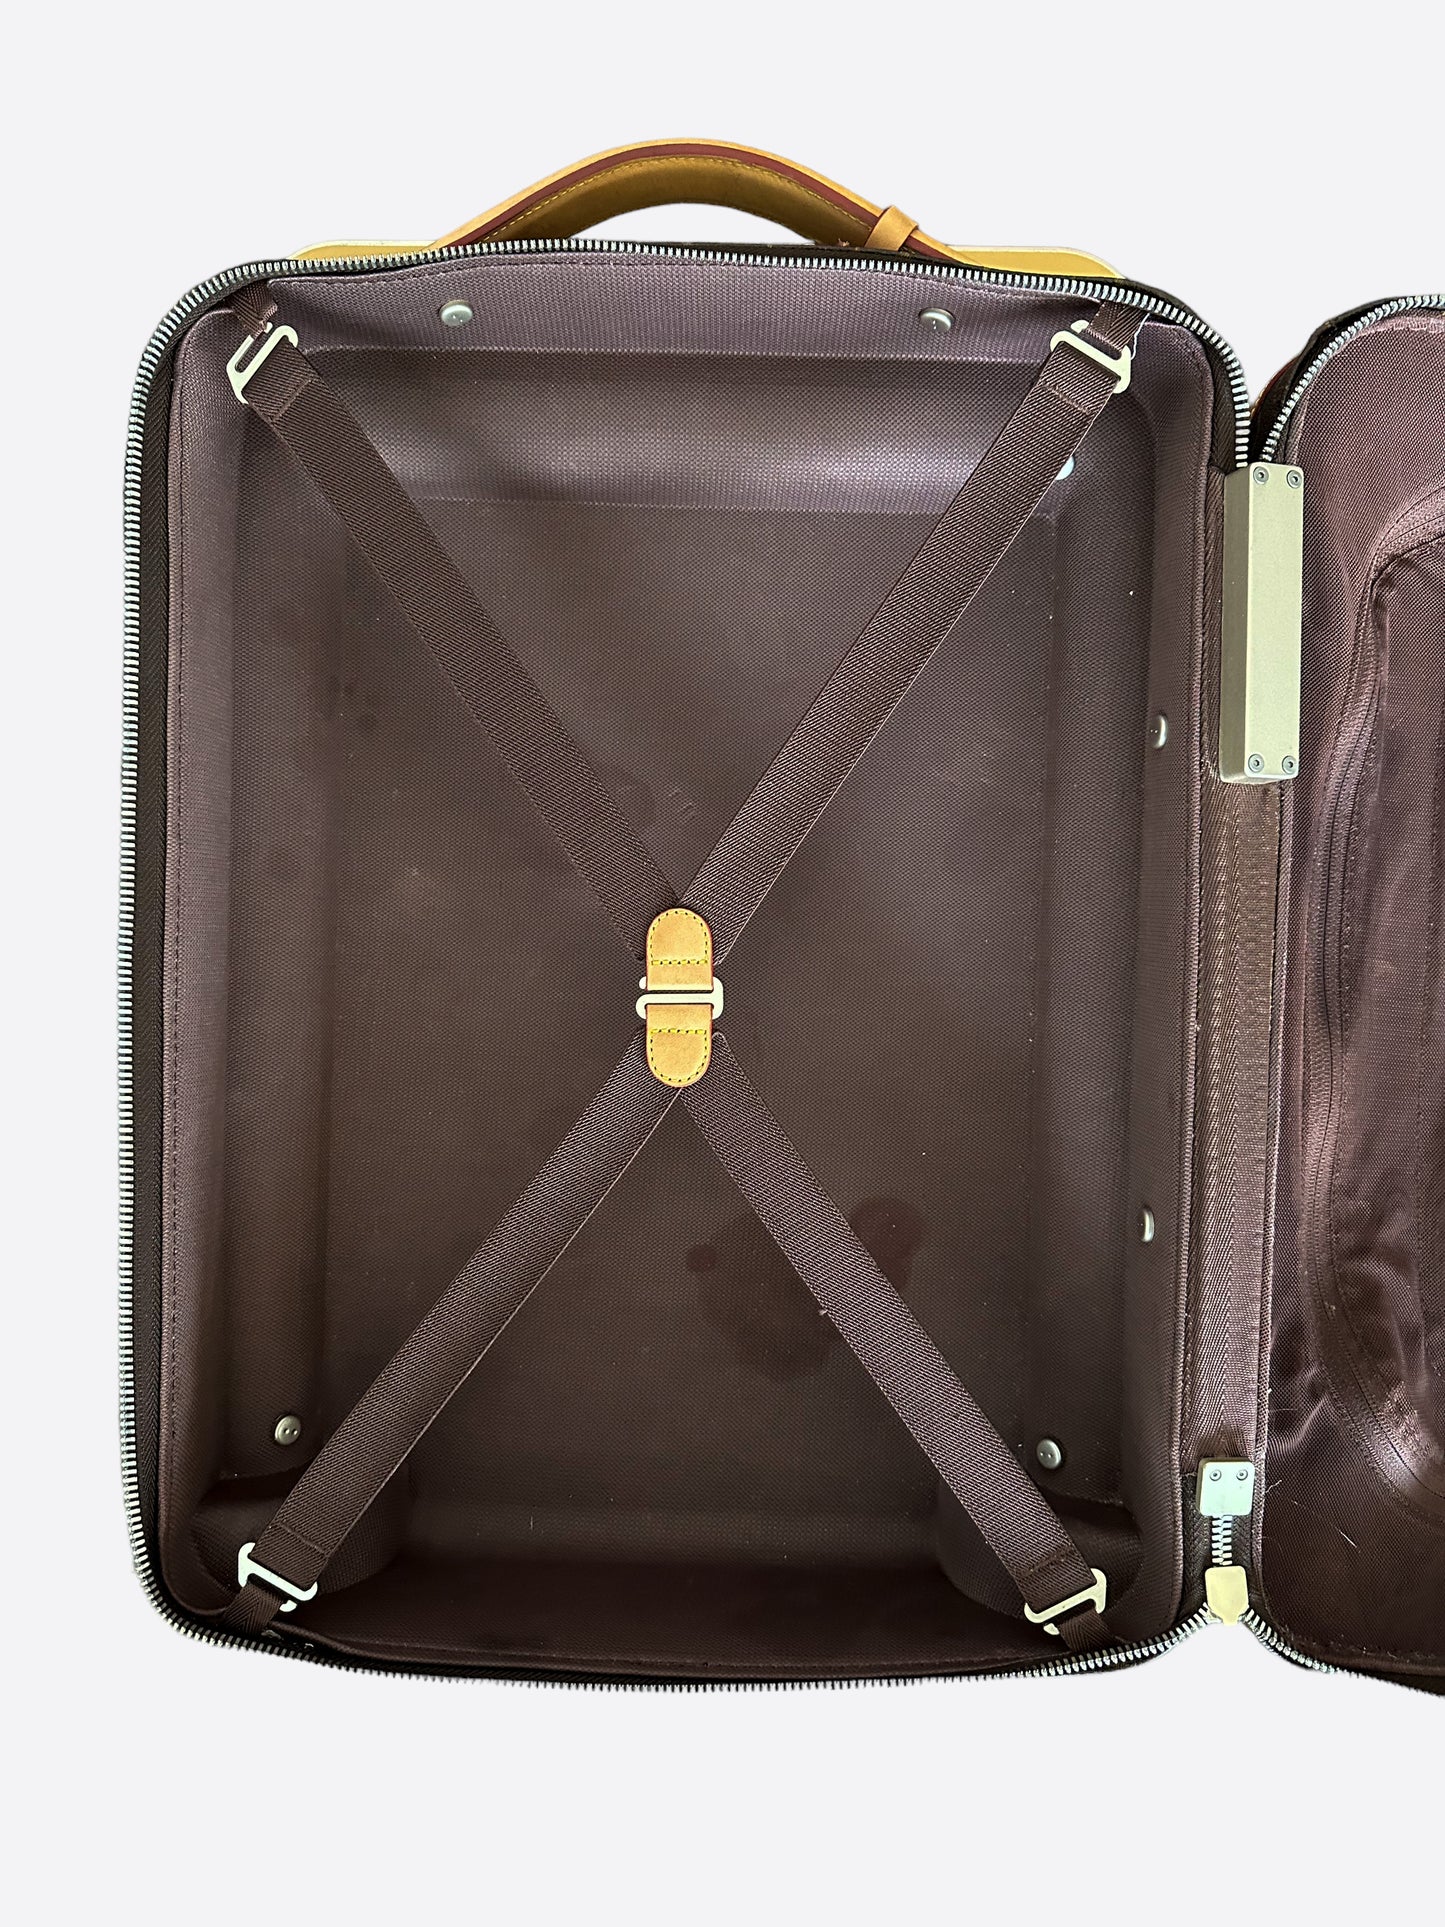 Louis Vuitton Damier Ebene Horizon 50 Rolling Luggage - Brown